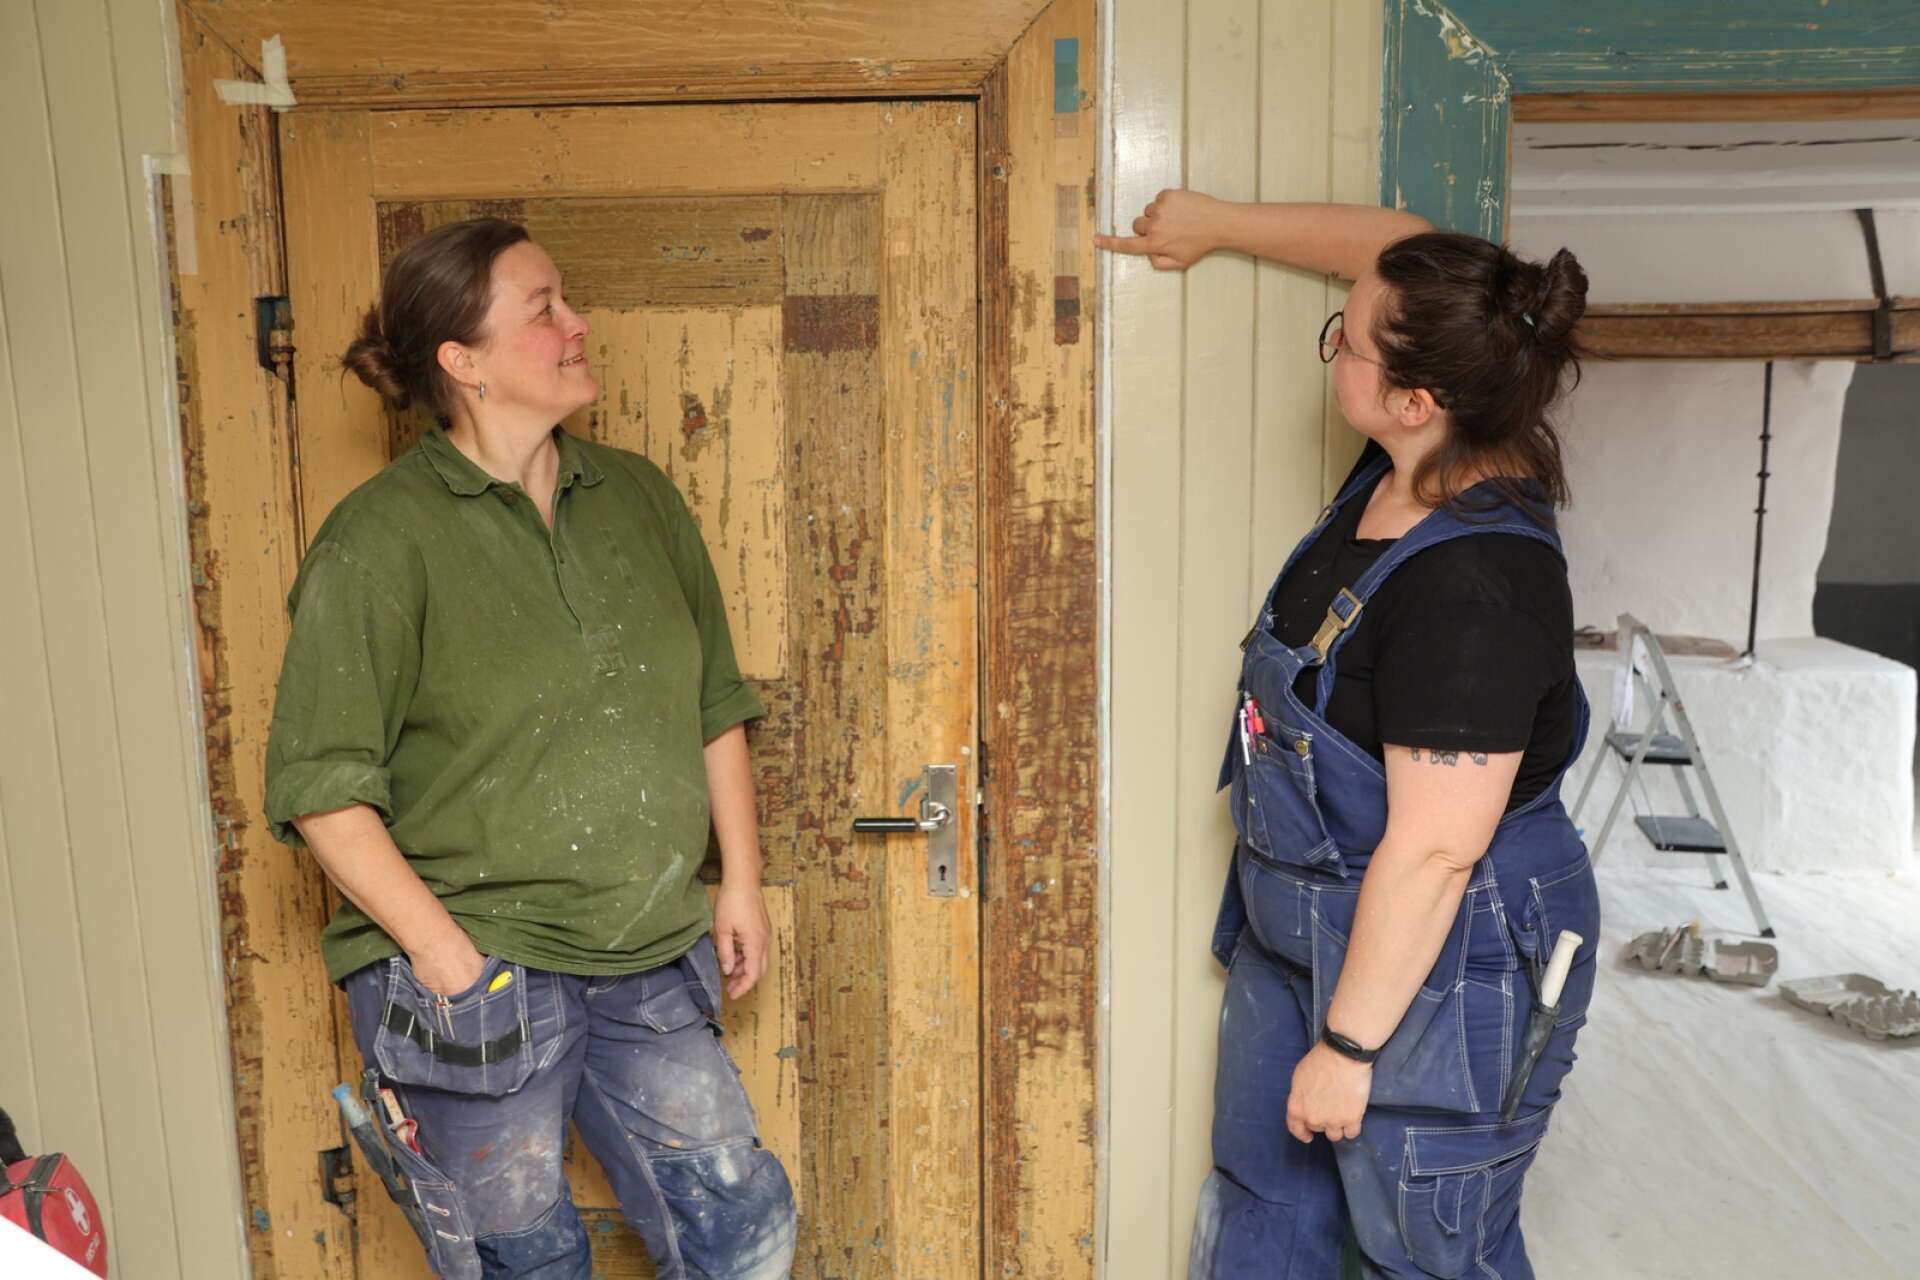 Kulturmålarna Susanne Lundmark och Olivia de Jong, som här visar en av de färgtrappor som de har skrapat fram på en dörr.